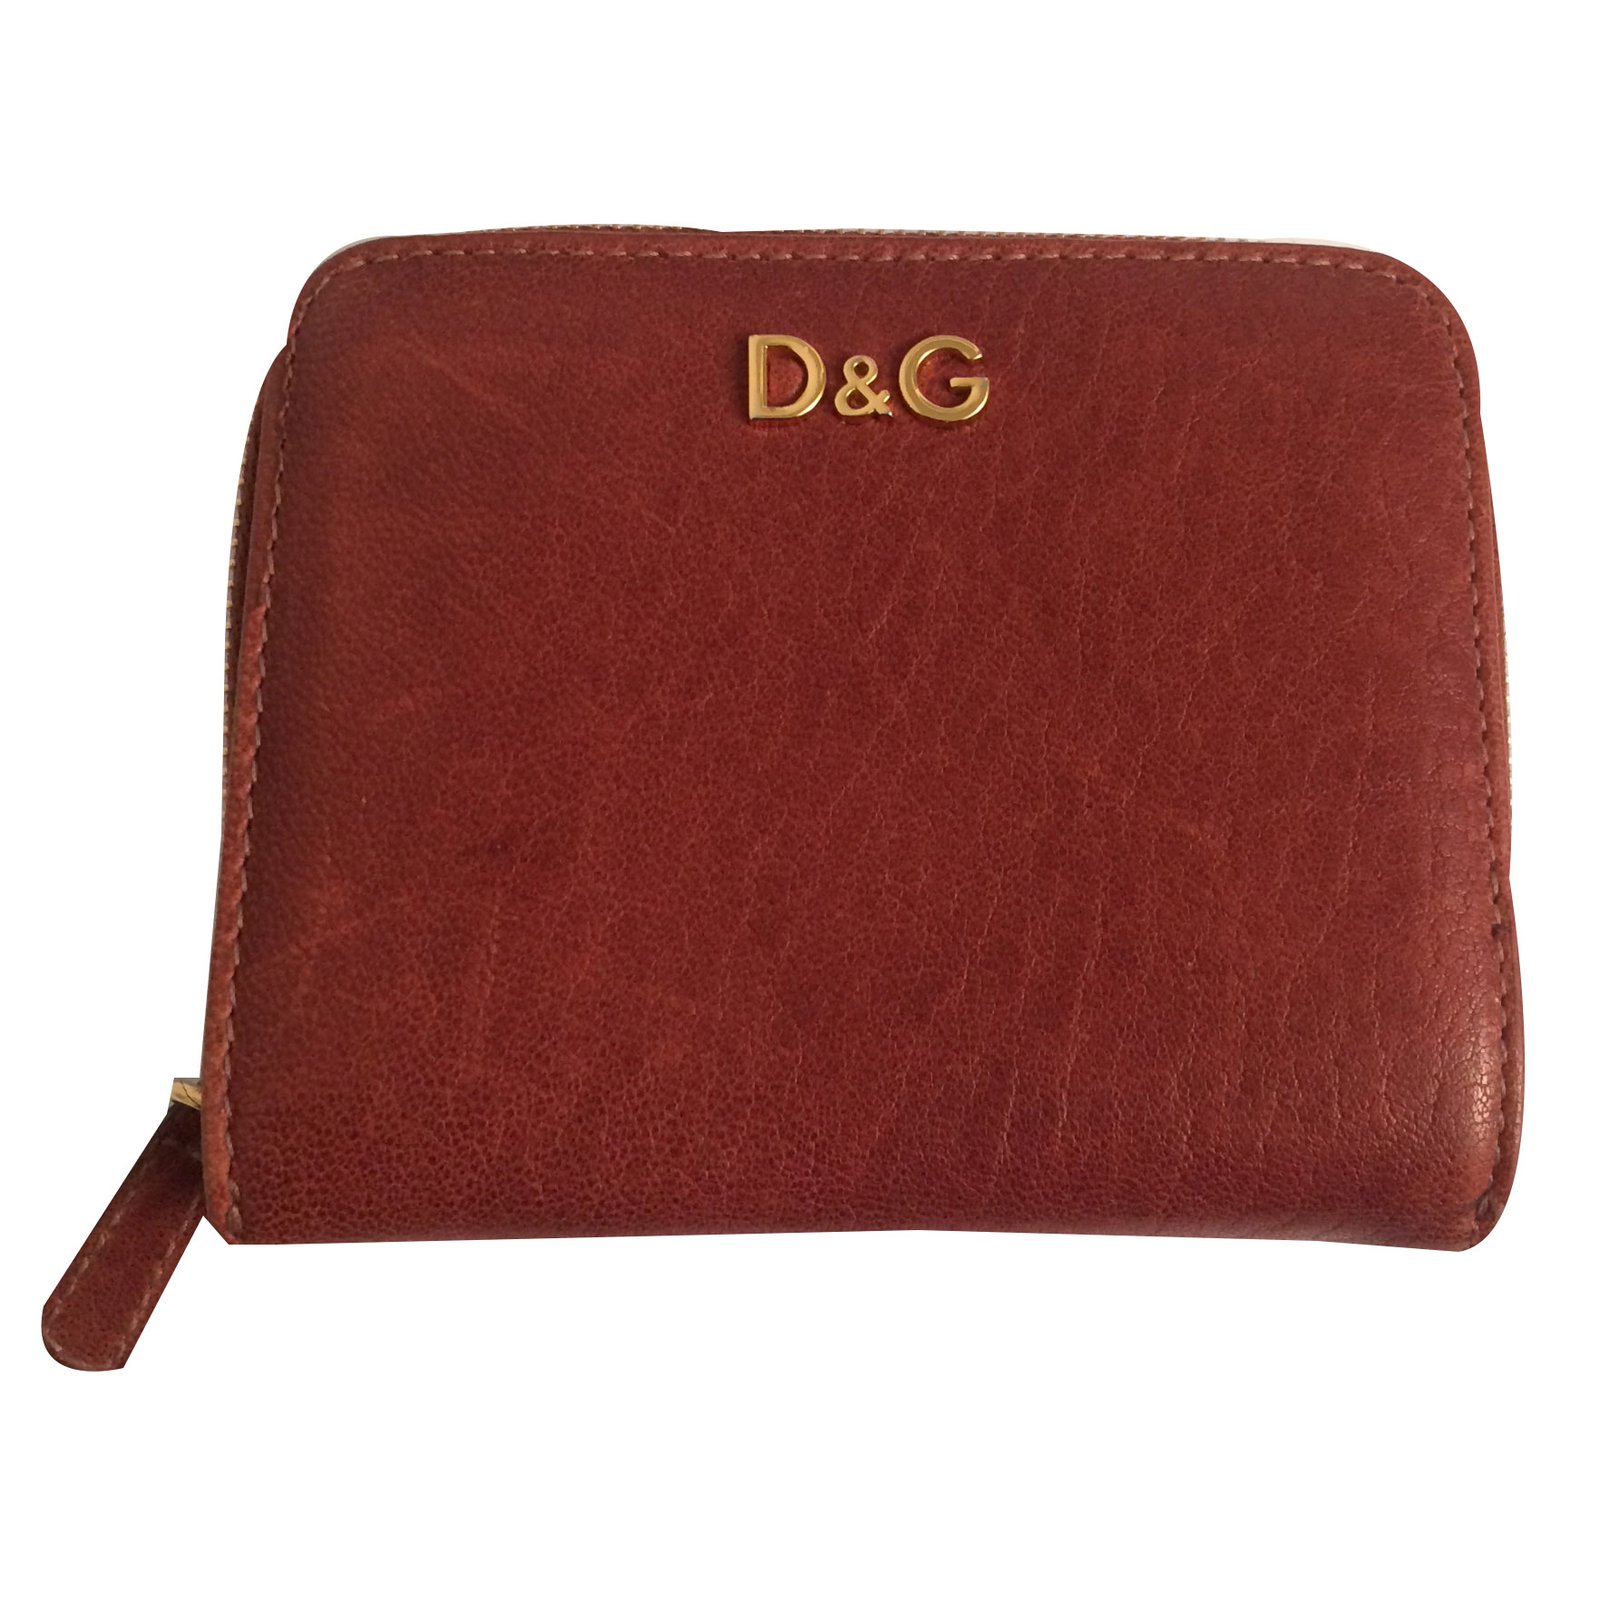 d & g purse